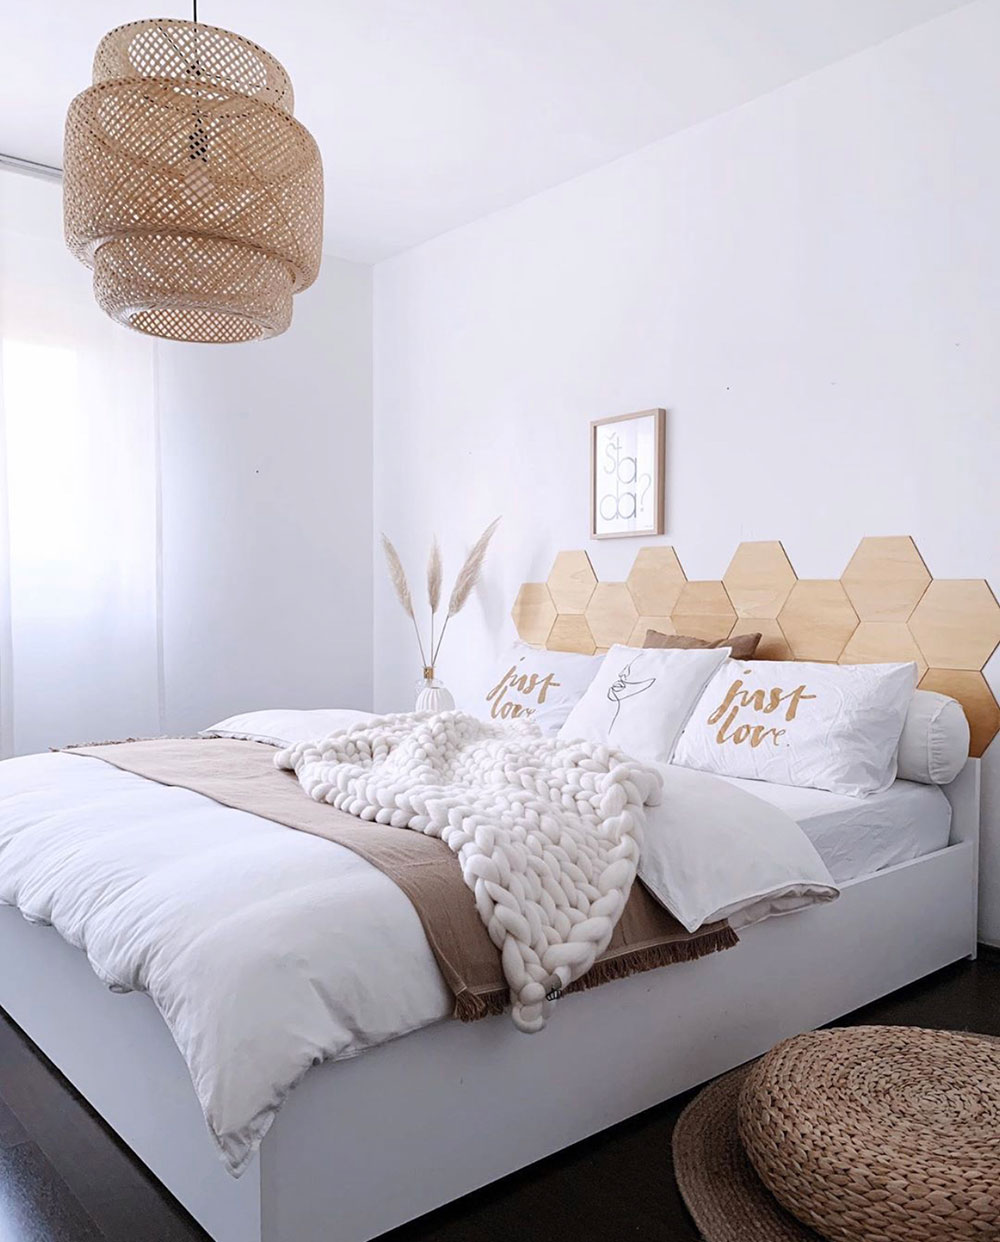 Bedroom-in-natural-tones-with-wooden-DIY-Headboard